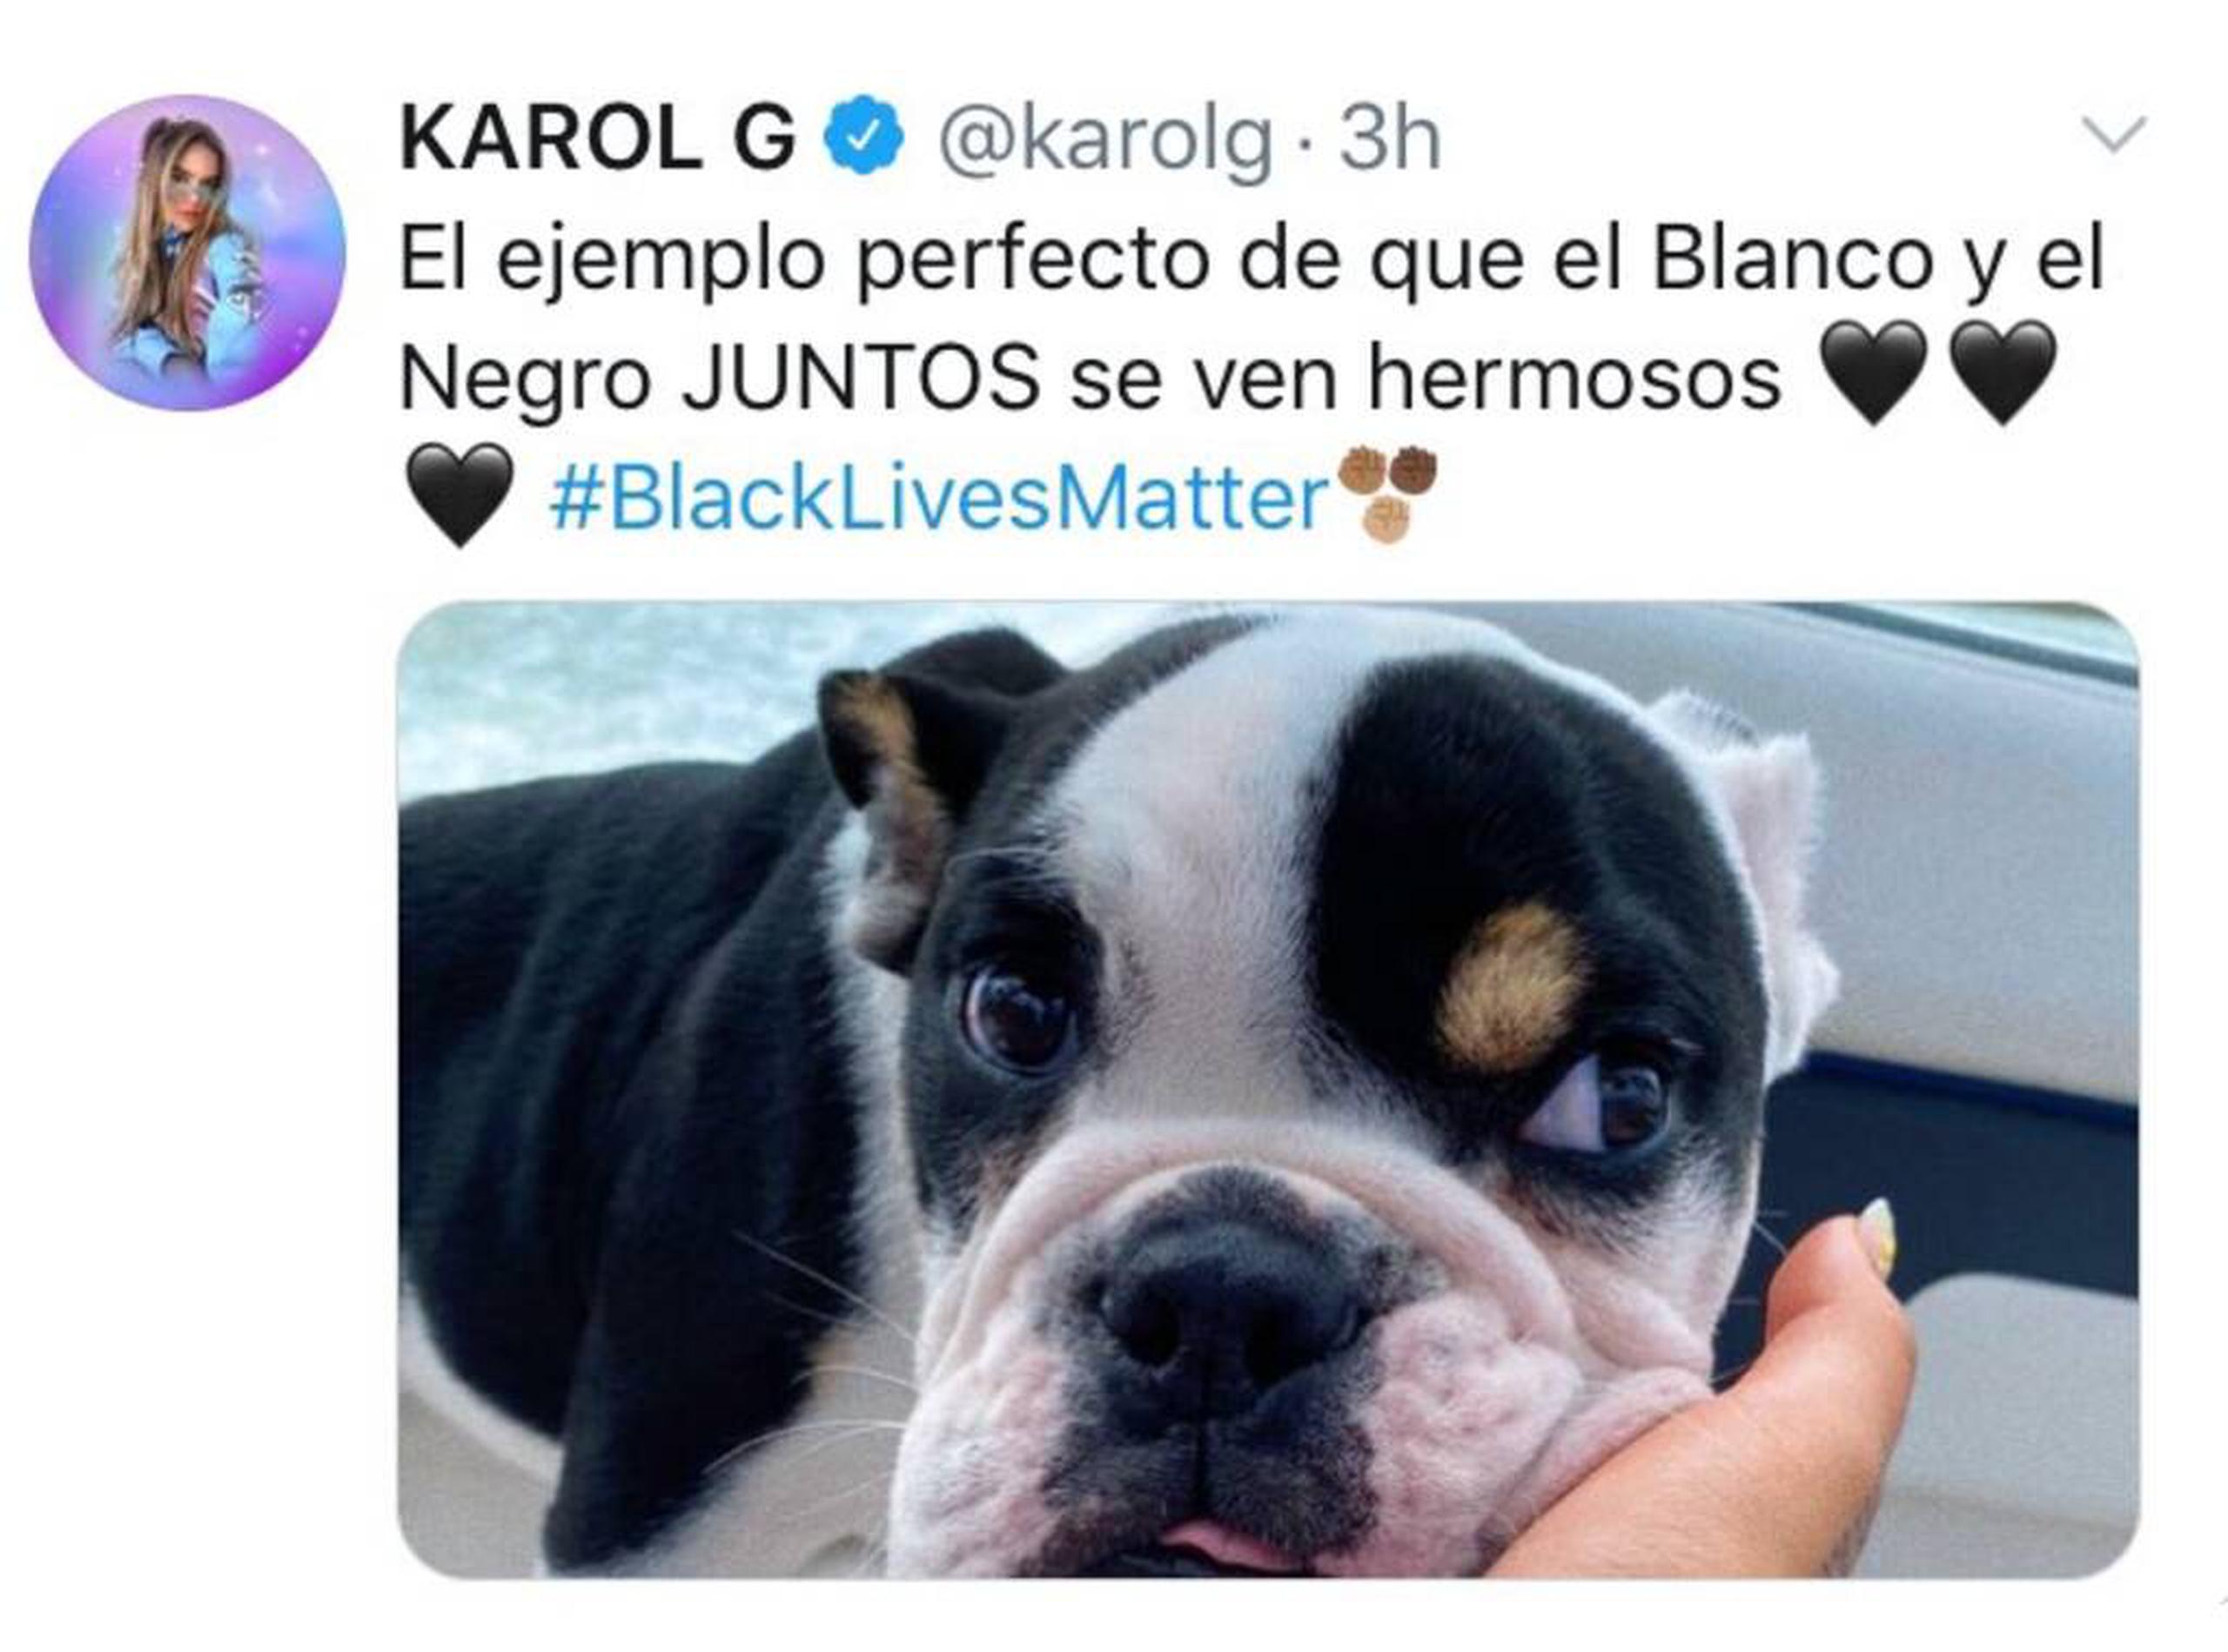 “El ejemplo perfecto de que el blanco y el negro juntos se ven hermosos”, expresó Karol G junto a una foto de su perro.